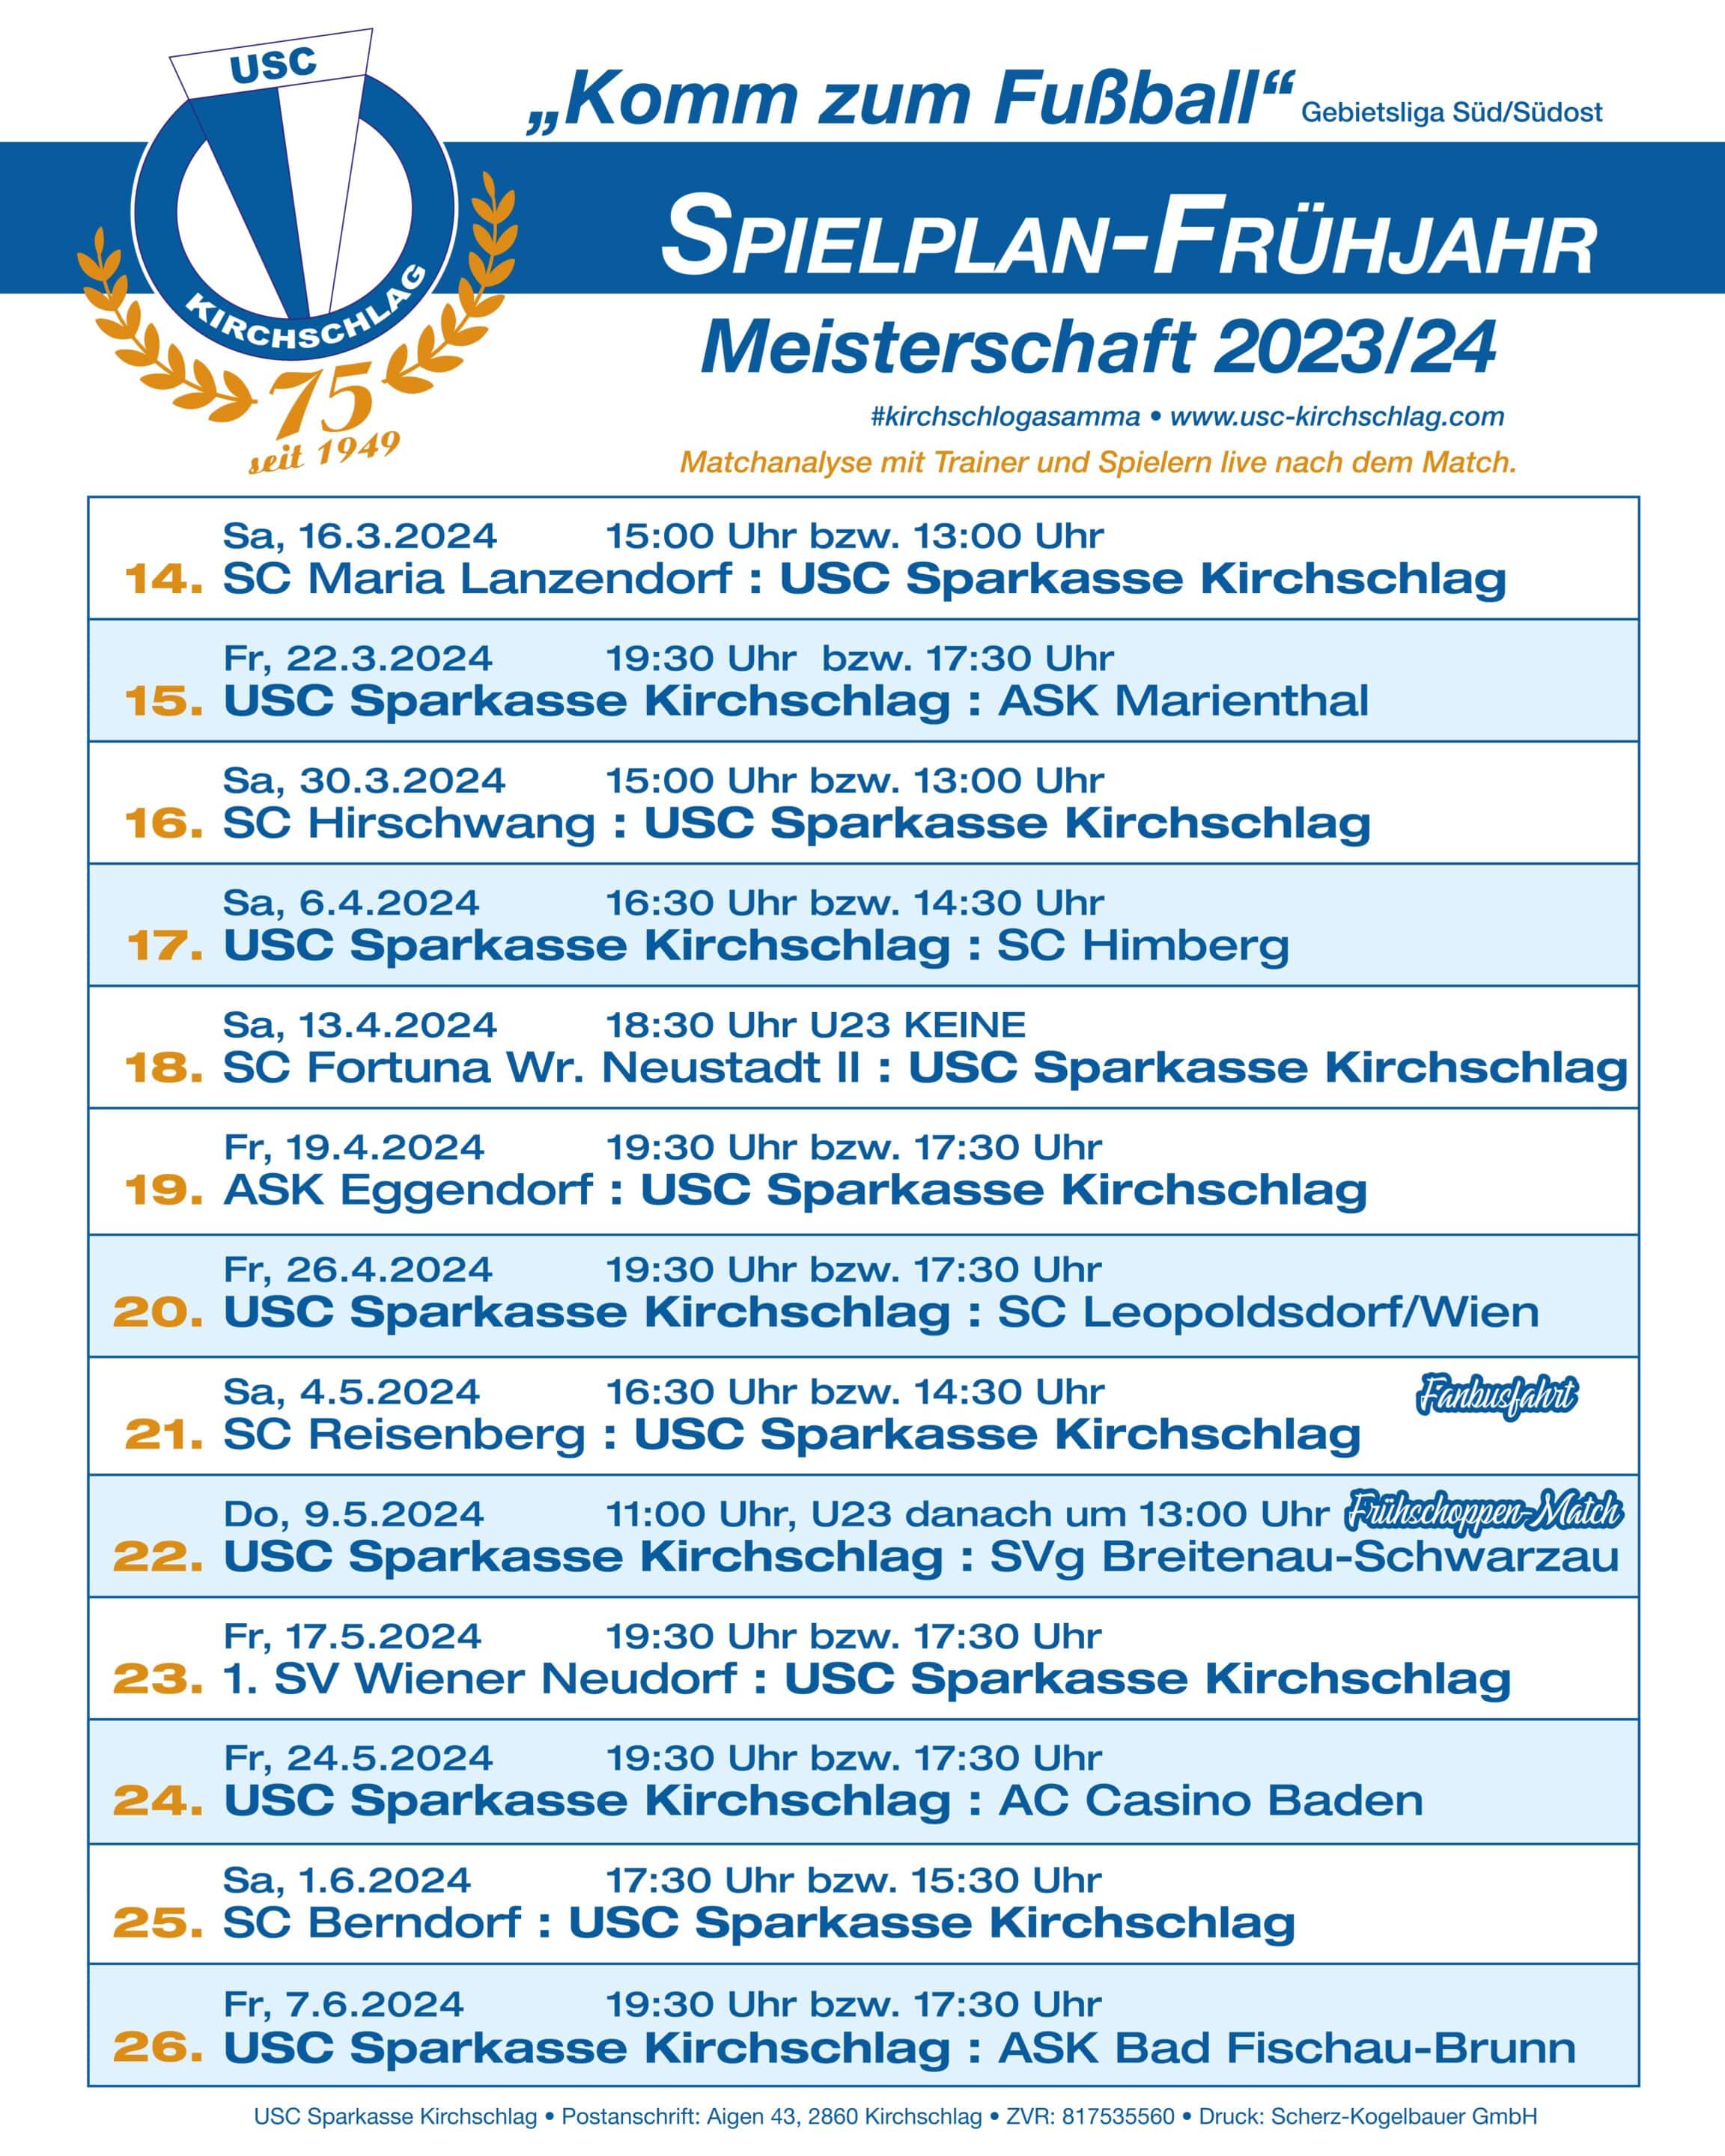 Spielplan Frühjahr 2024 Gebietsliga Süd/Südost USC Sparkasse Kirchschlag